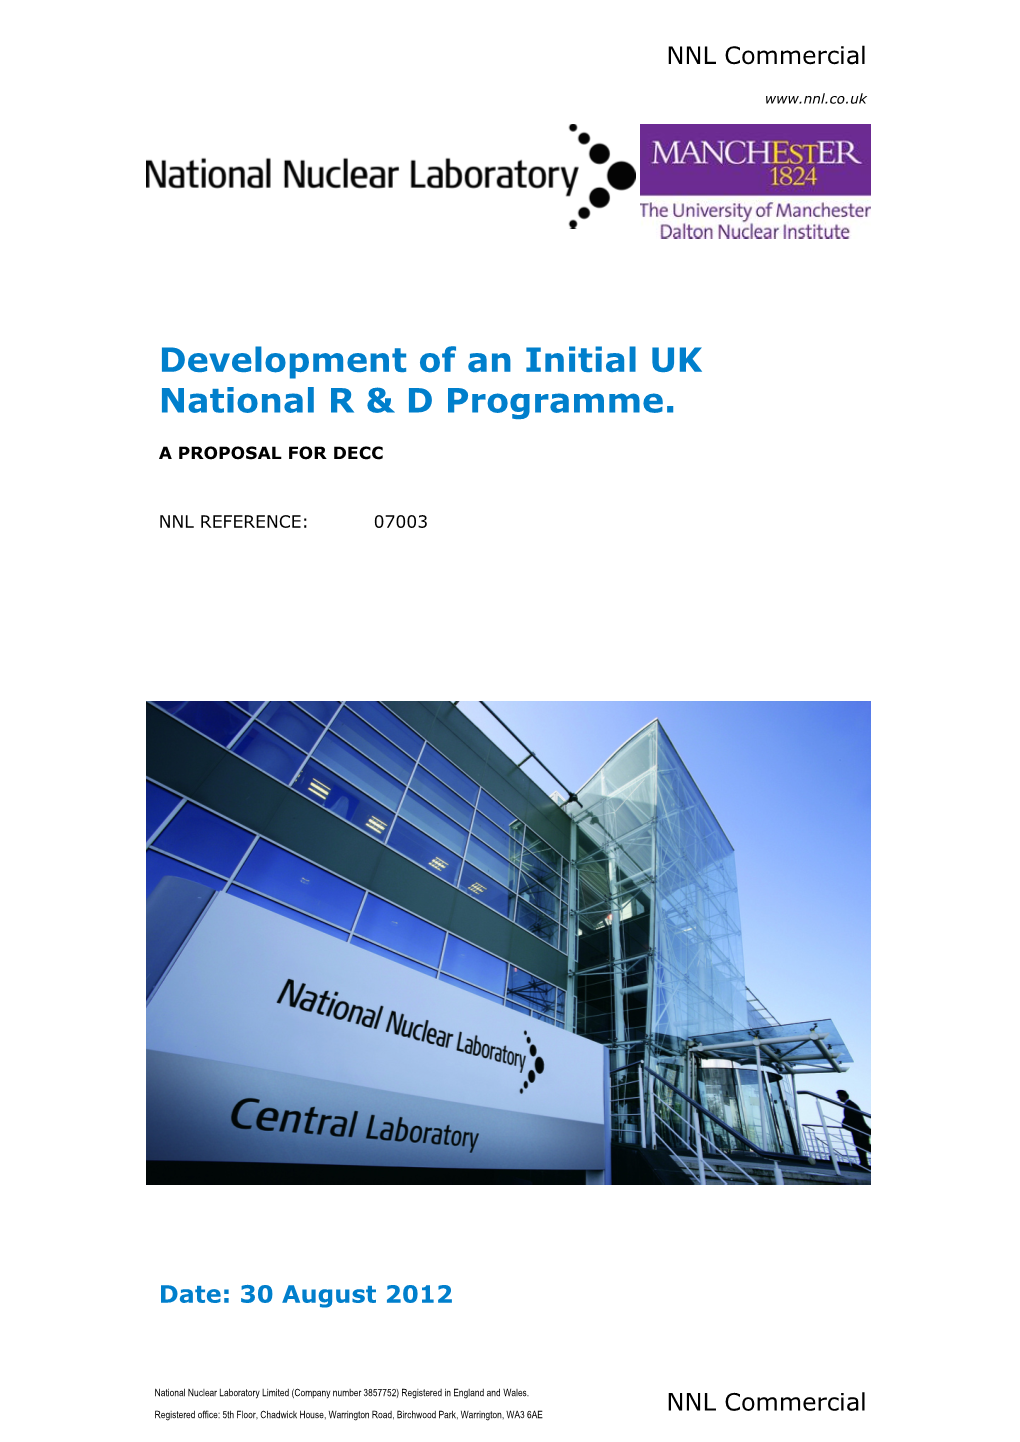 Development of an Initial UK National R & D Programme